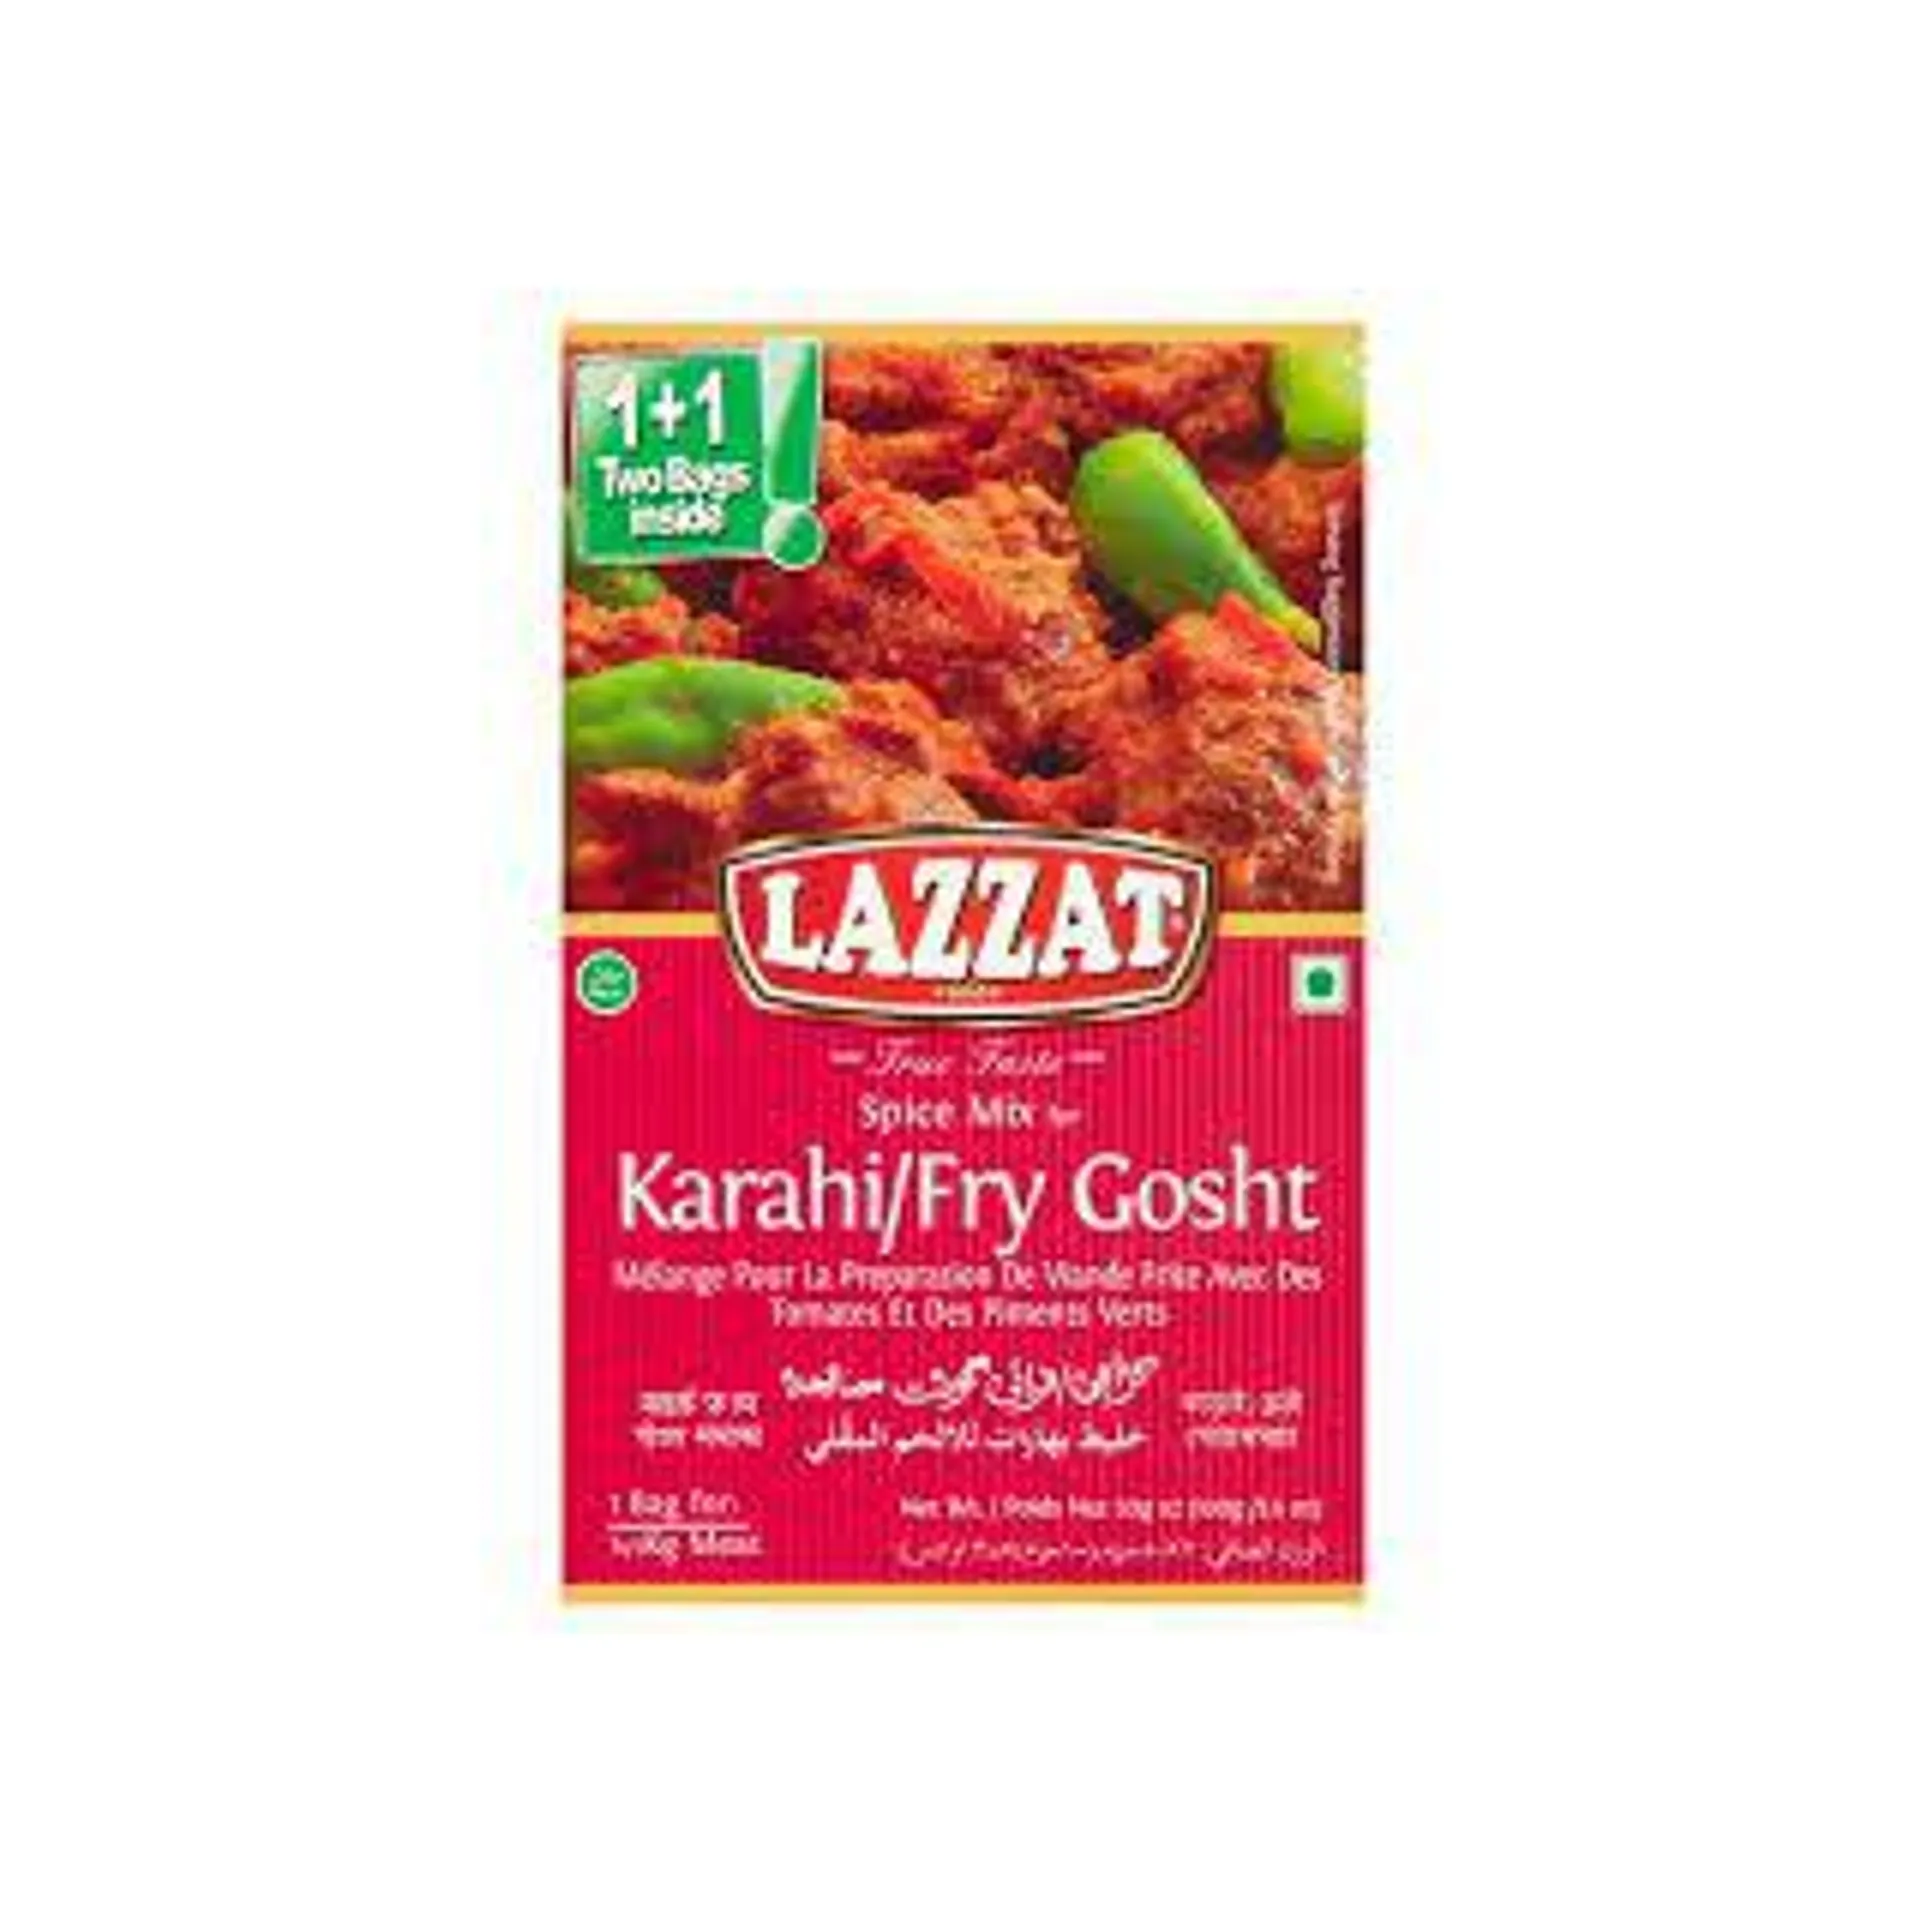 Lazzat SP Karahi/Fry Gosht100g